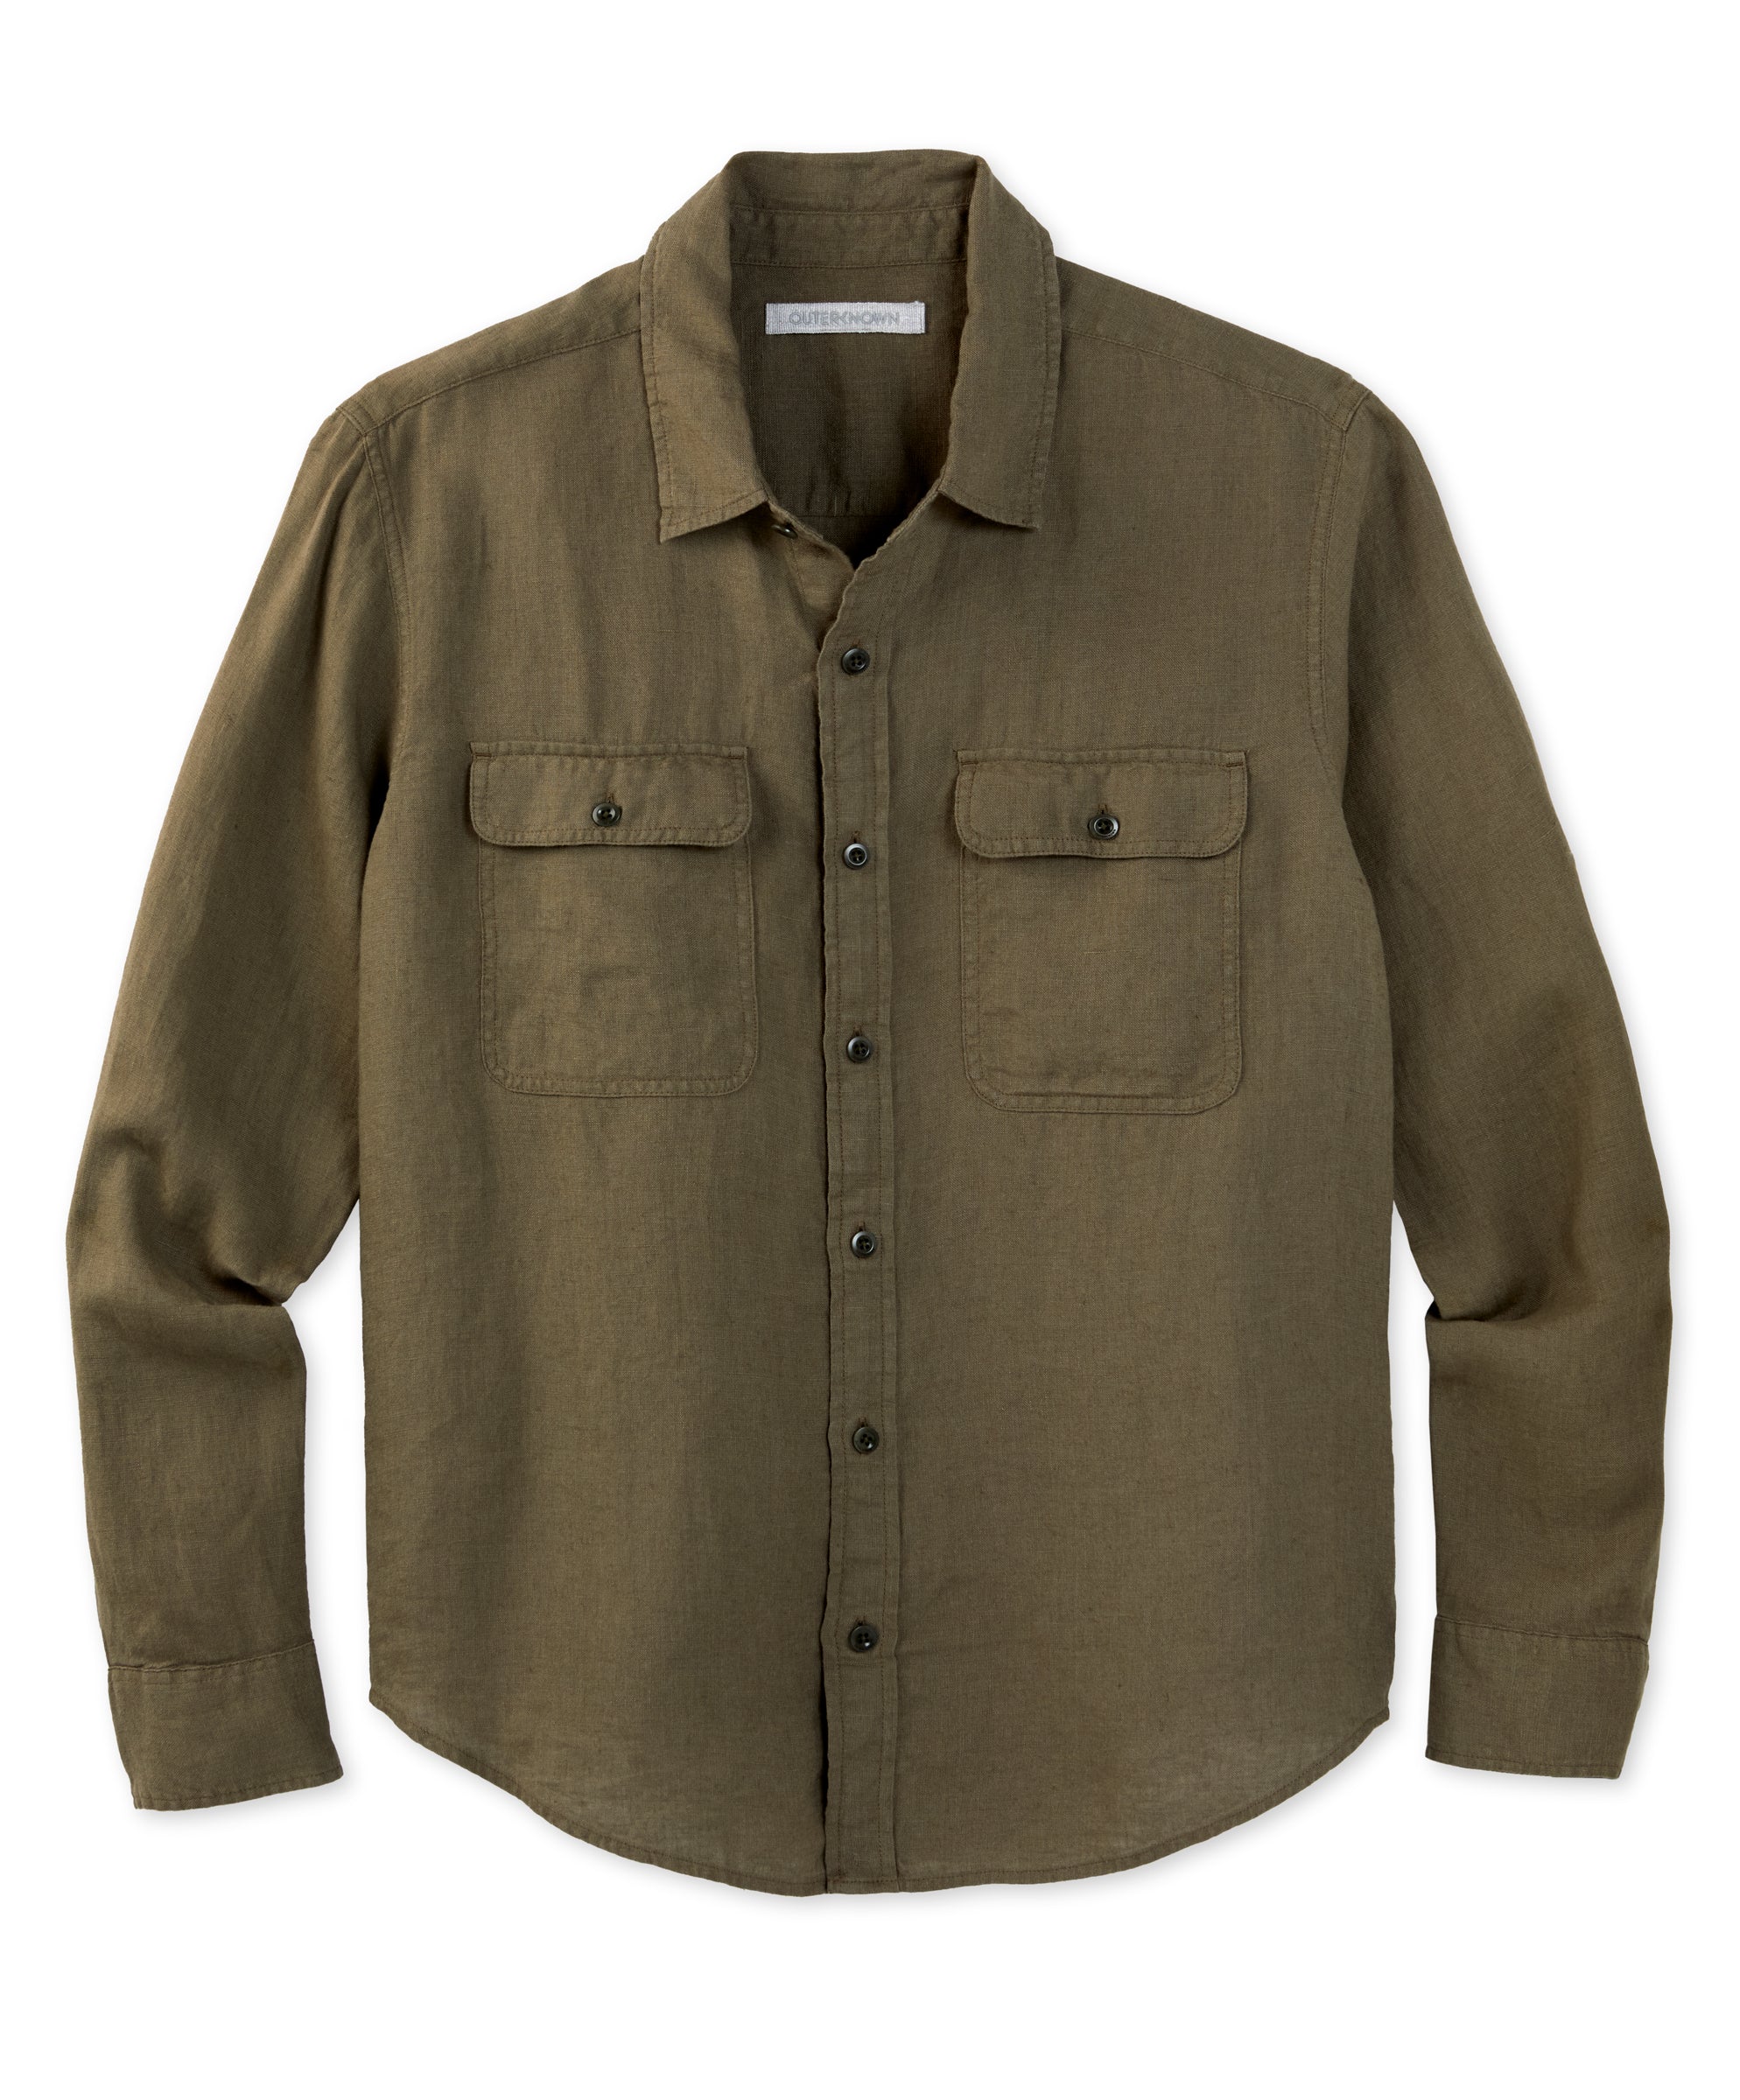 Windward Linen Shirt | Men's Shirts | Outerknown